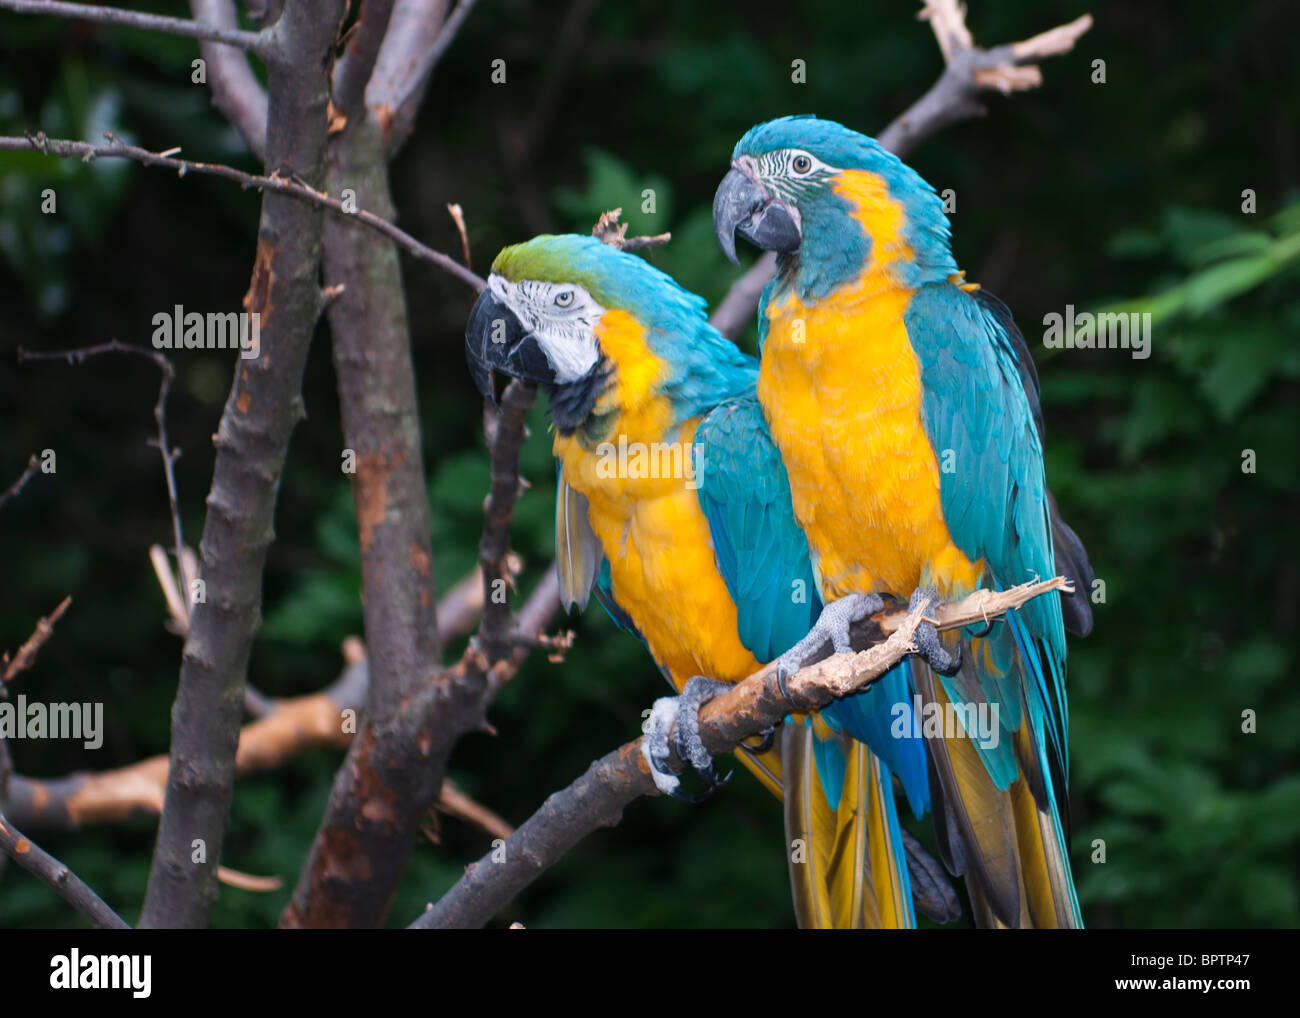 Azul y Amarillo guacamayo (Ara ararauna), es miembro del grupo de grandes loros neotropicales conocido como guacamayos. Foto de stock